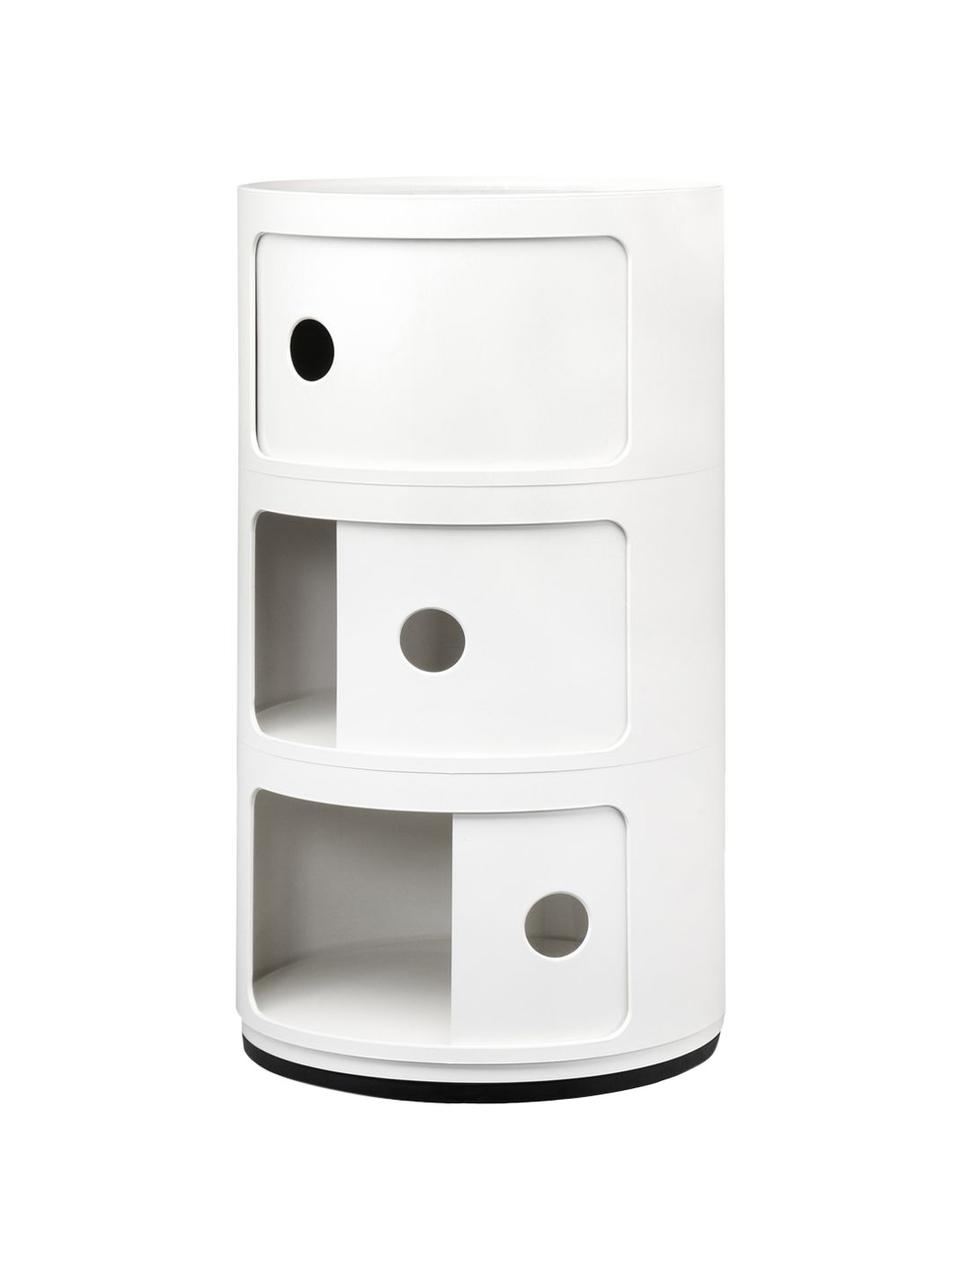 Contenitore di design bianco crema con 3 cassetti Componibili, Plastica (ABS) laccata, certificata Greenguard, Bianco crema, Ø 32 x Alt. 59 cm